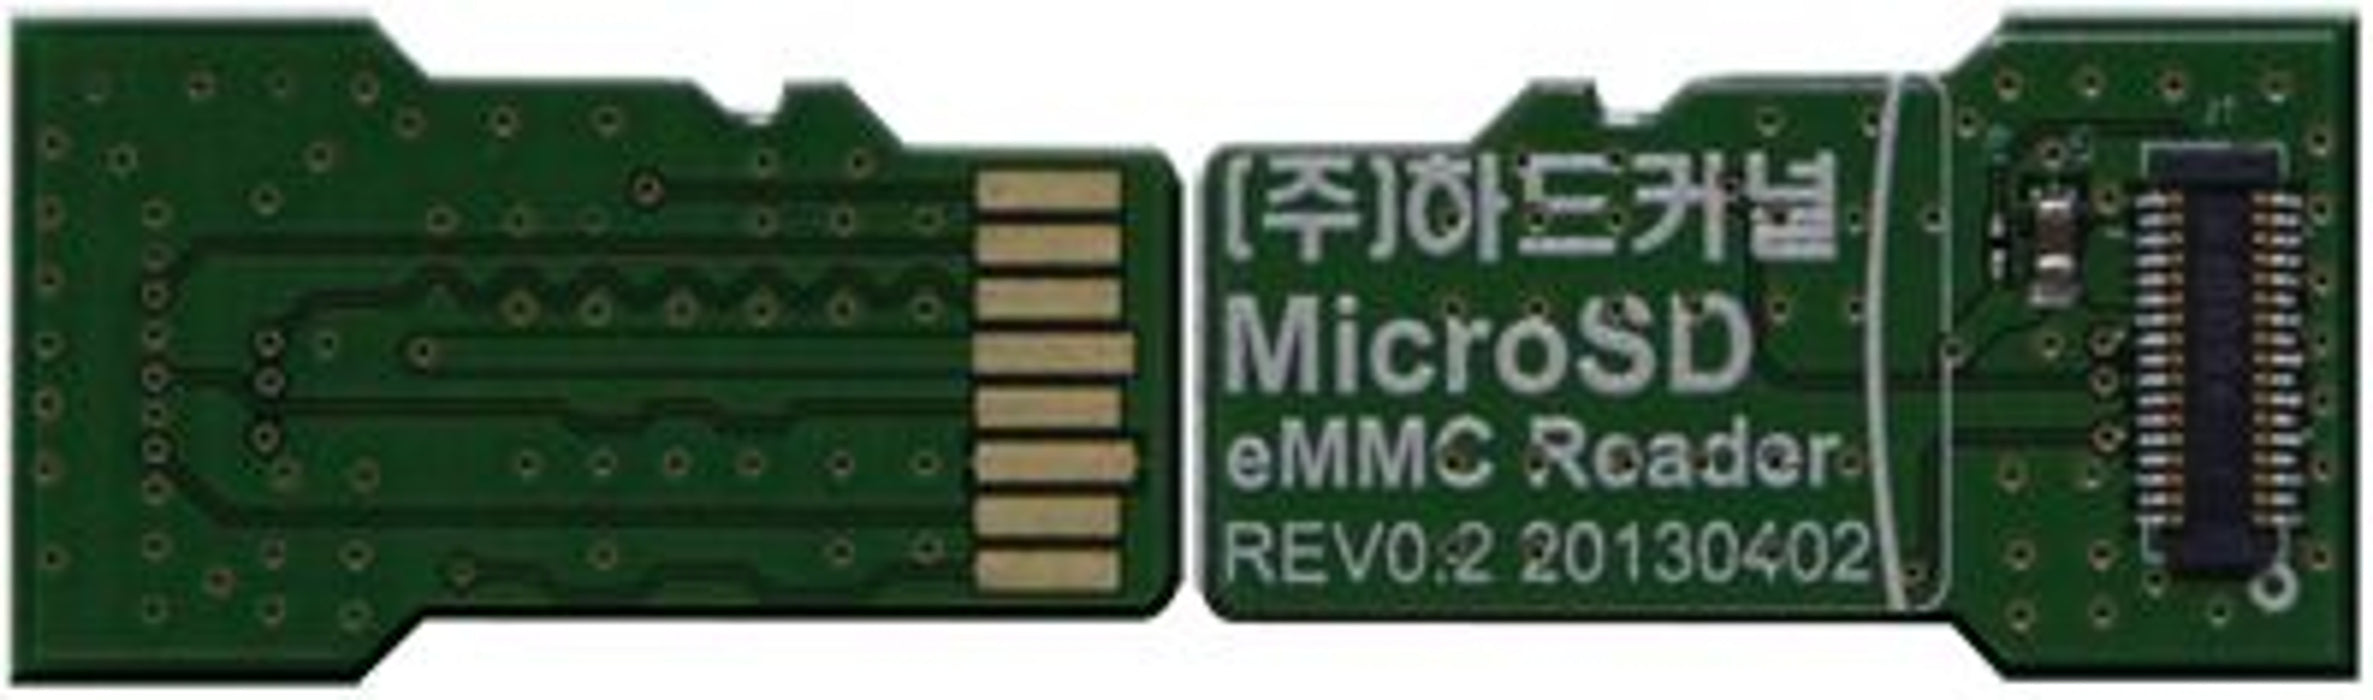 eMMC Adapter